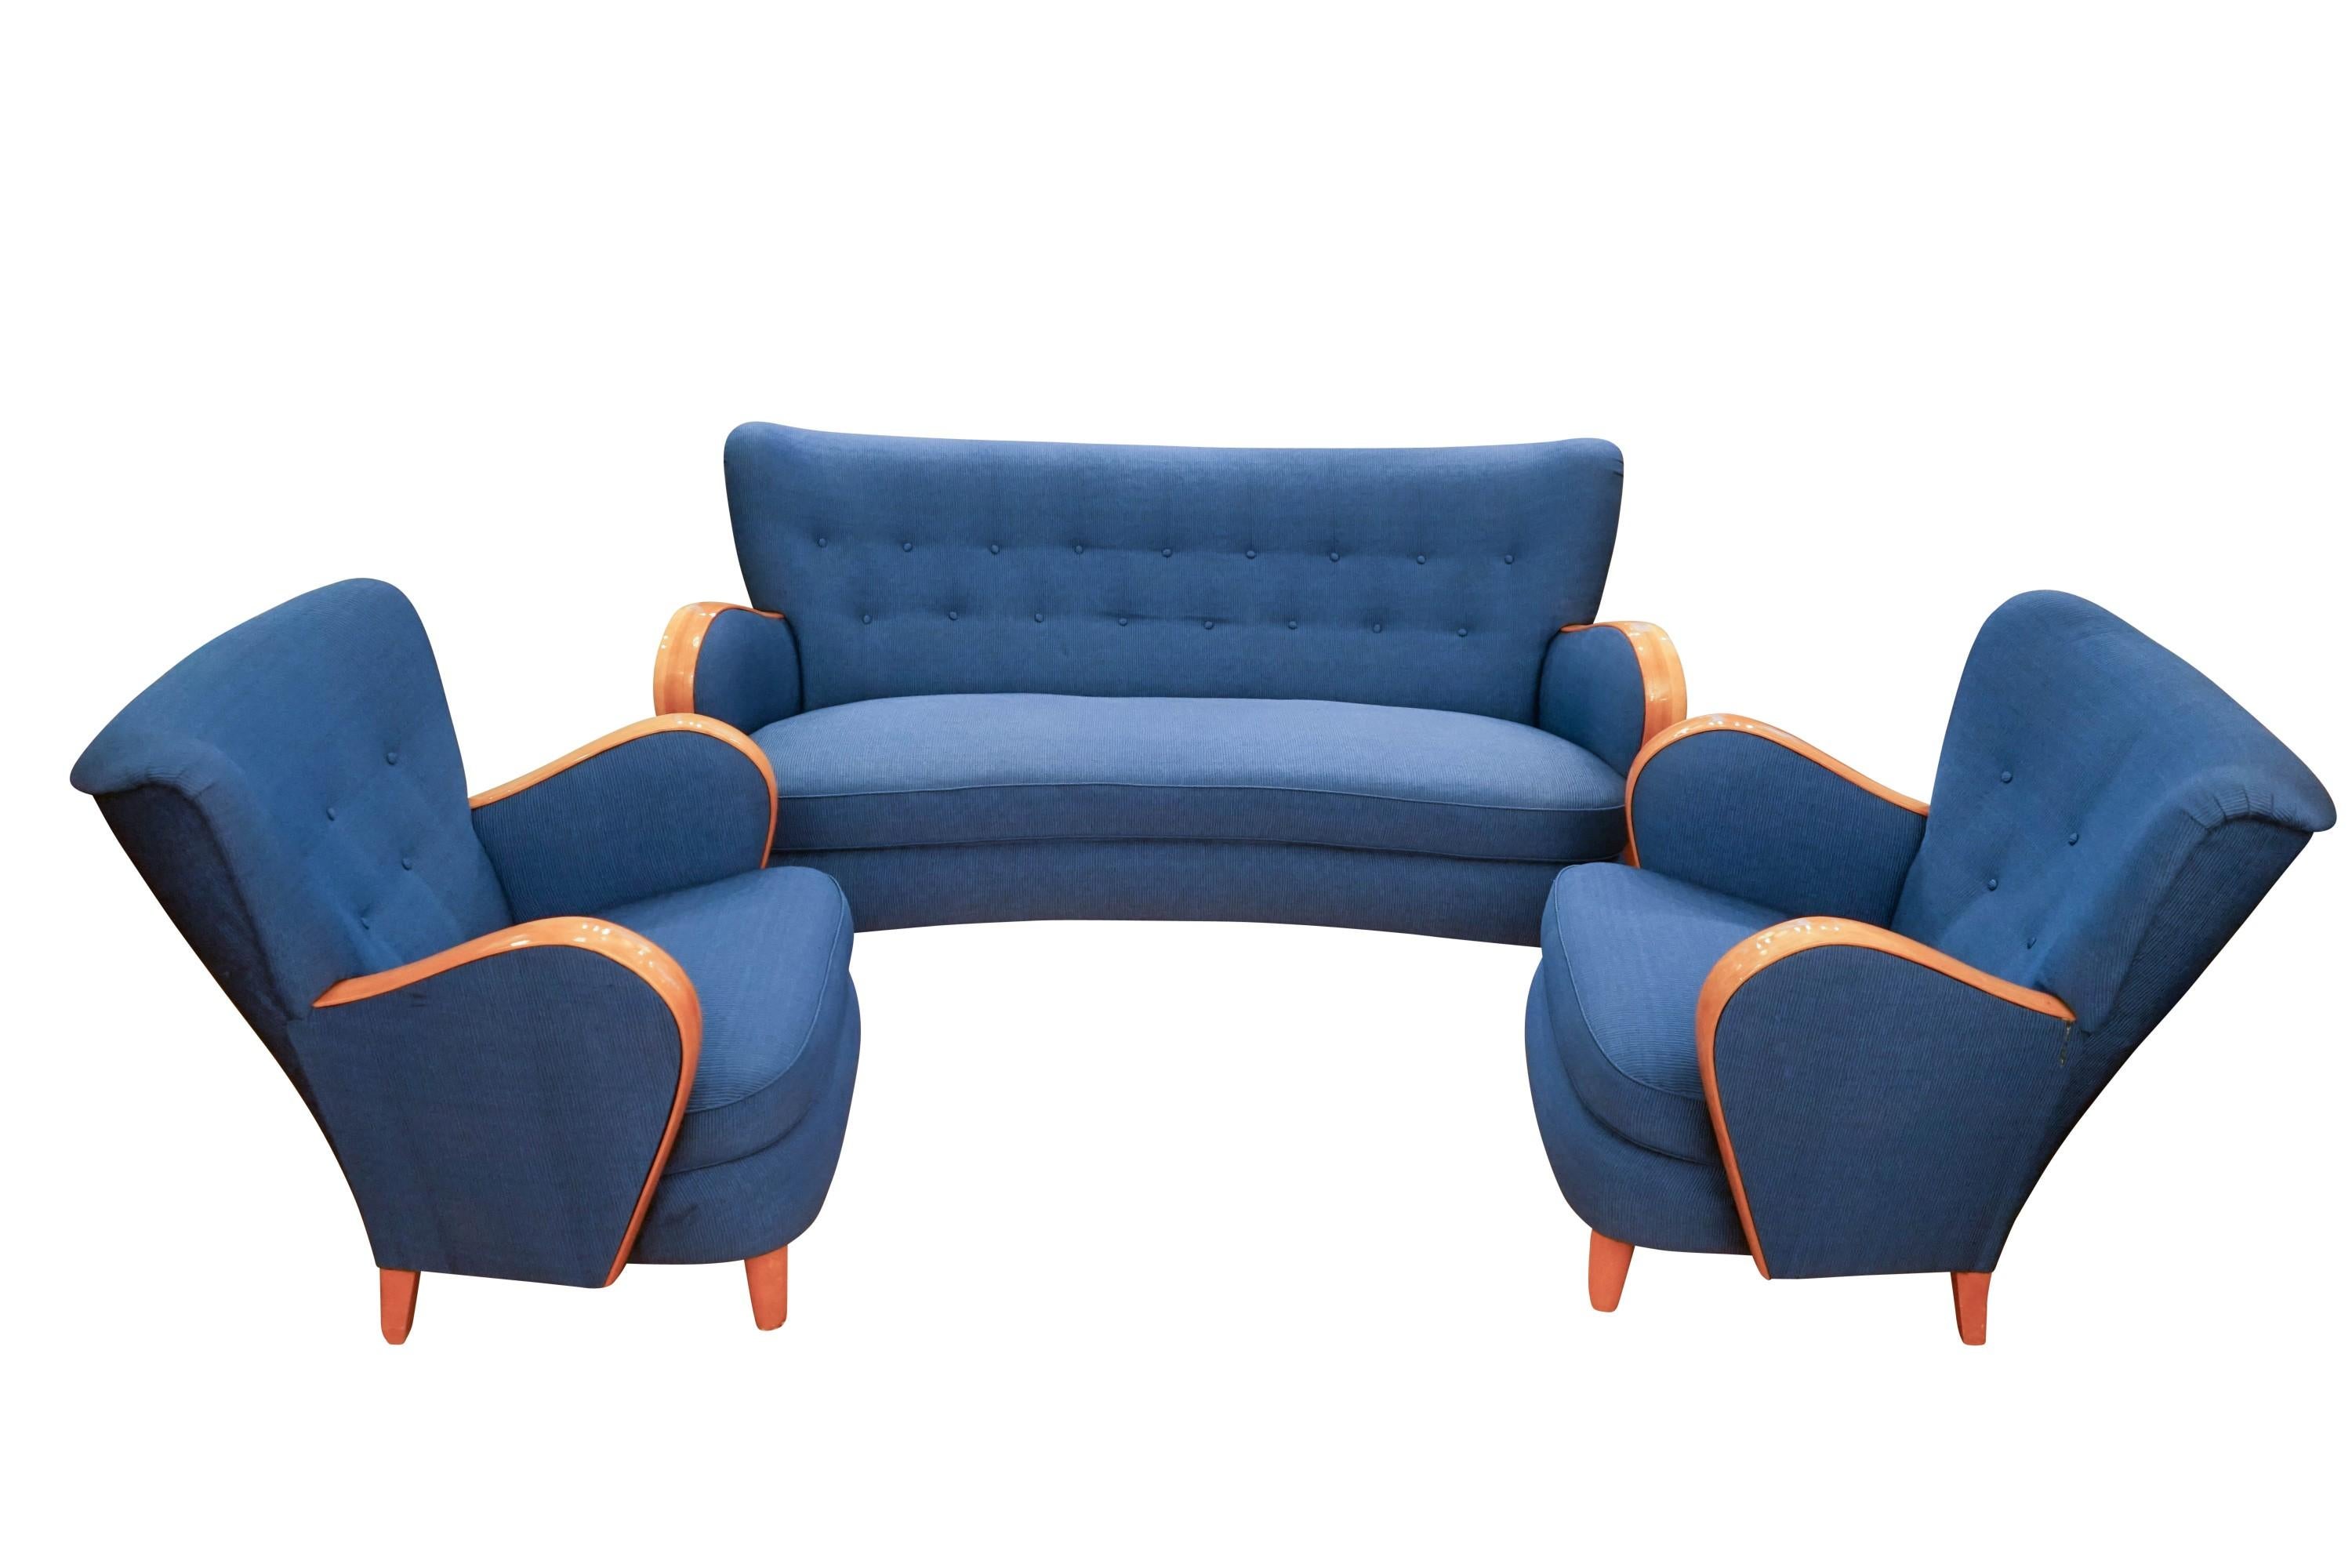 Ein geschwungenes, maßgeschneidertes Sofa mit Schaukel wird durch ein Paar passende, äußerst bequeme Sessel ergänzt. Die Bequemlichkeit ist zum Teil auf die handgefertigten Rückenlehnen der Sofas und Sessel mit strategisch platzierten flachen